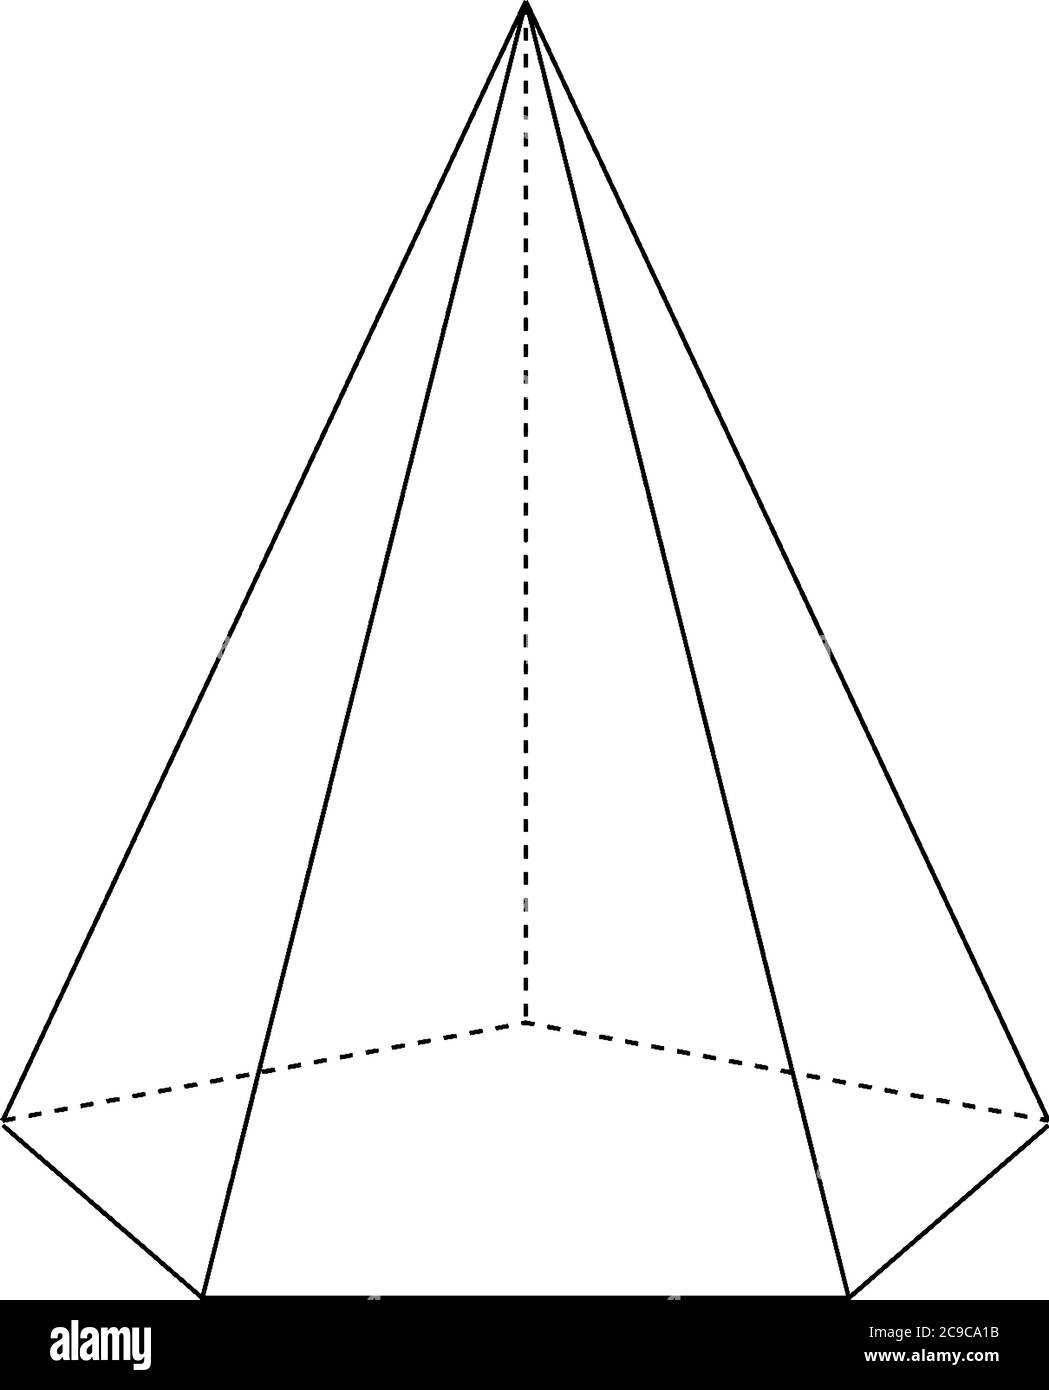 Costruzione geometrica di una piramide pentagonale destra con bordi  nascosti. La base è un pentagono e le facce sono triangoli isoscele, li  vintage Immagine e Vettoriale - Alamy